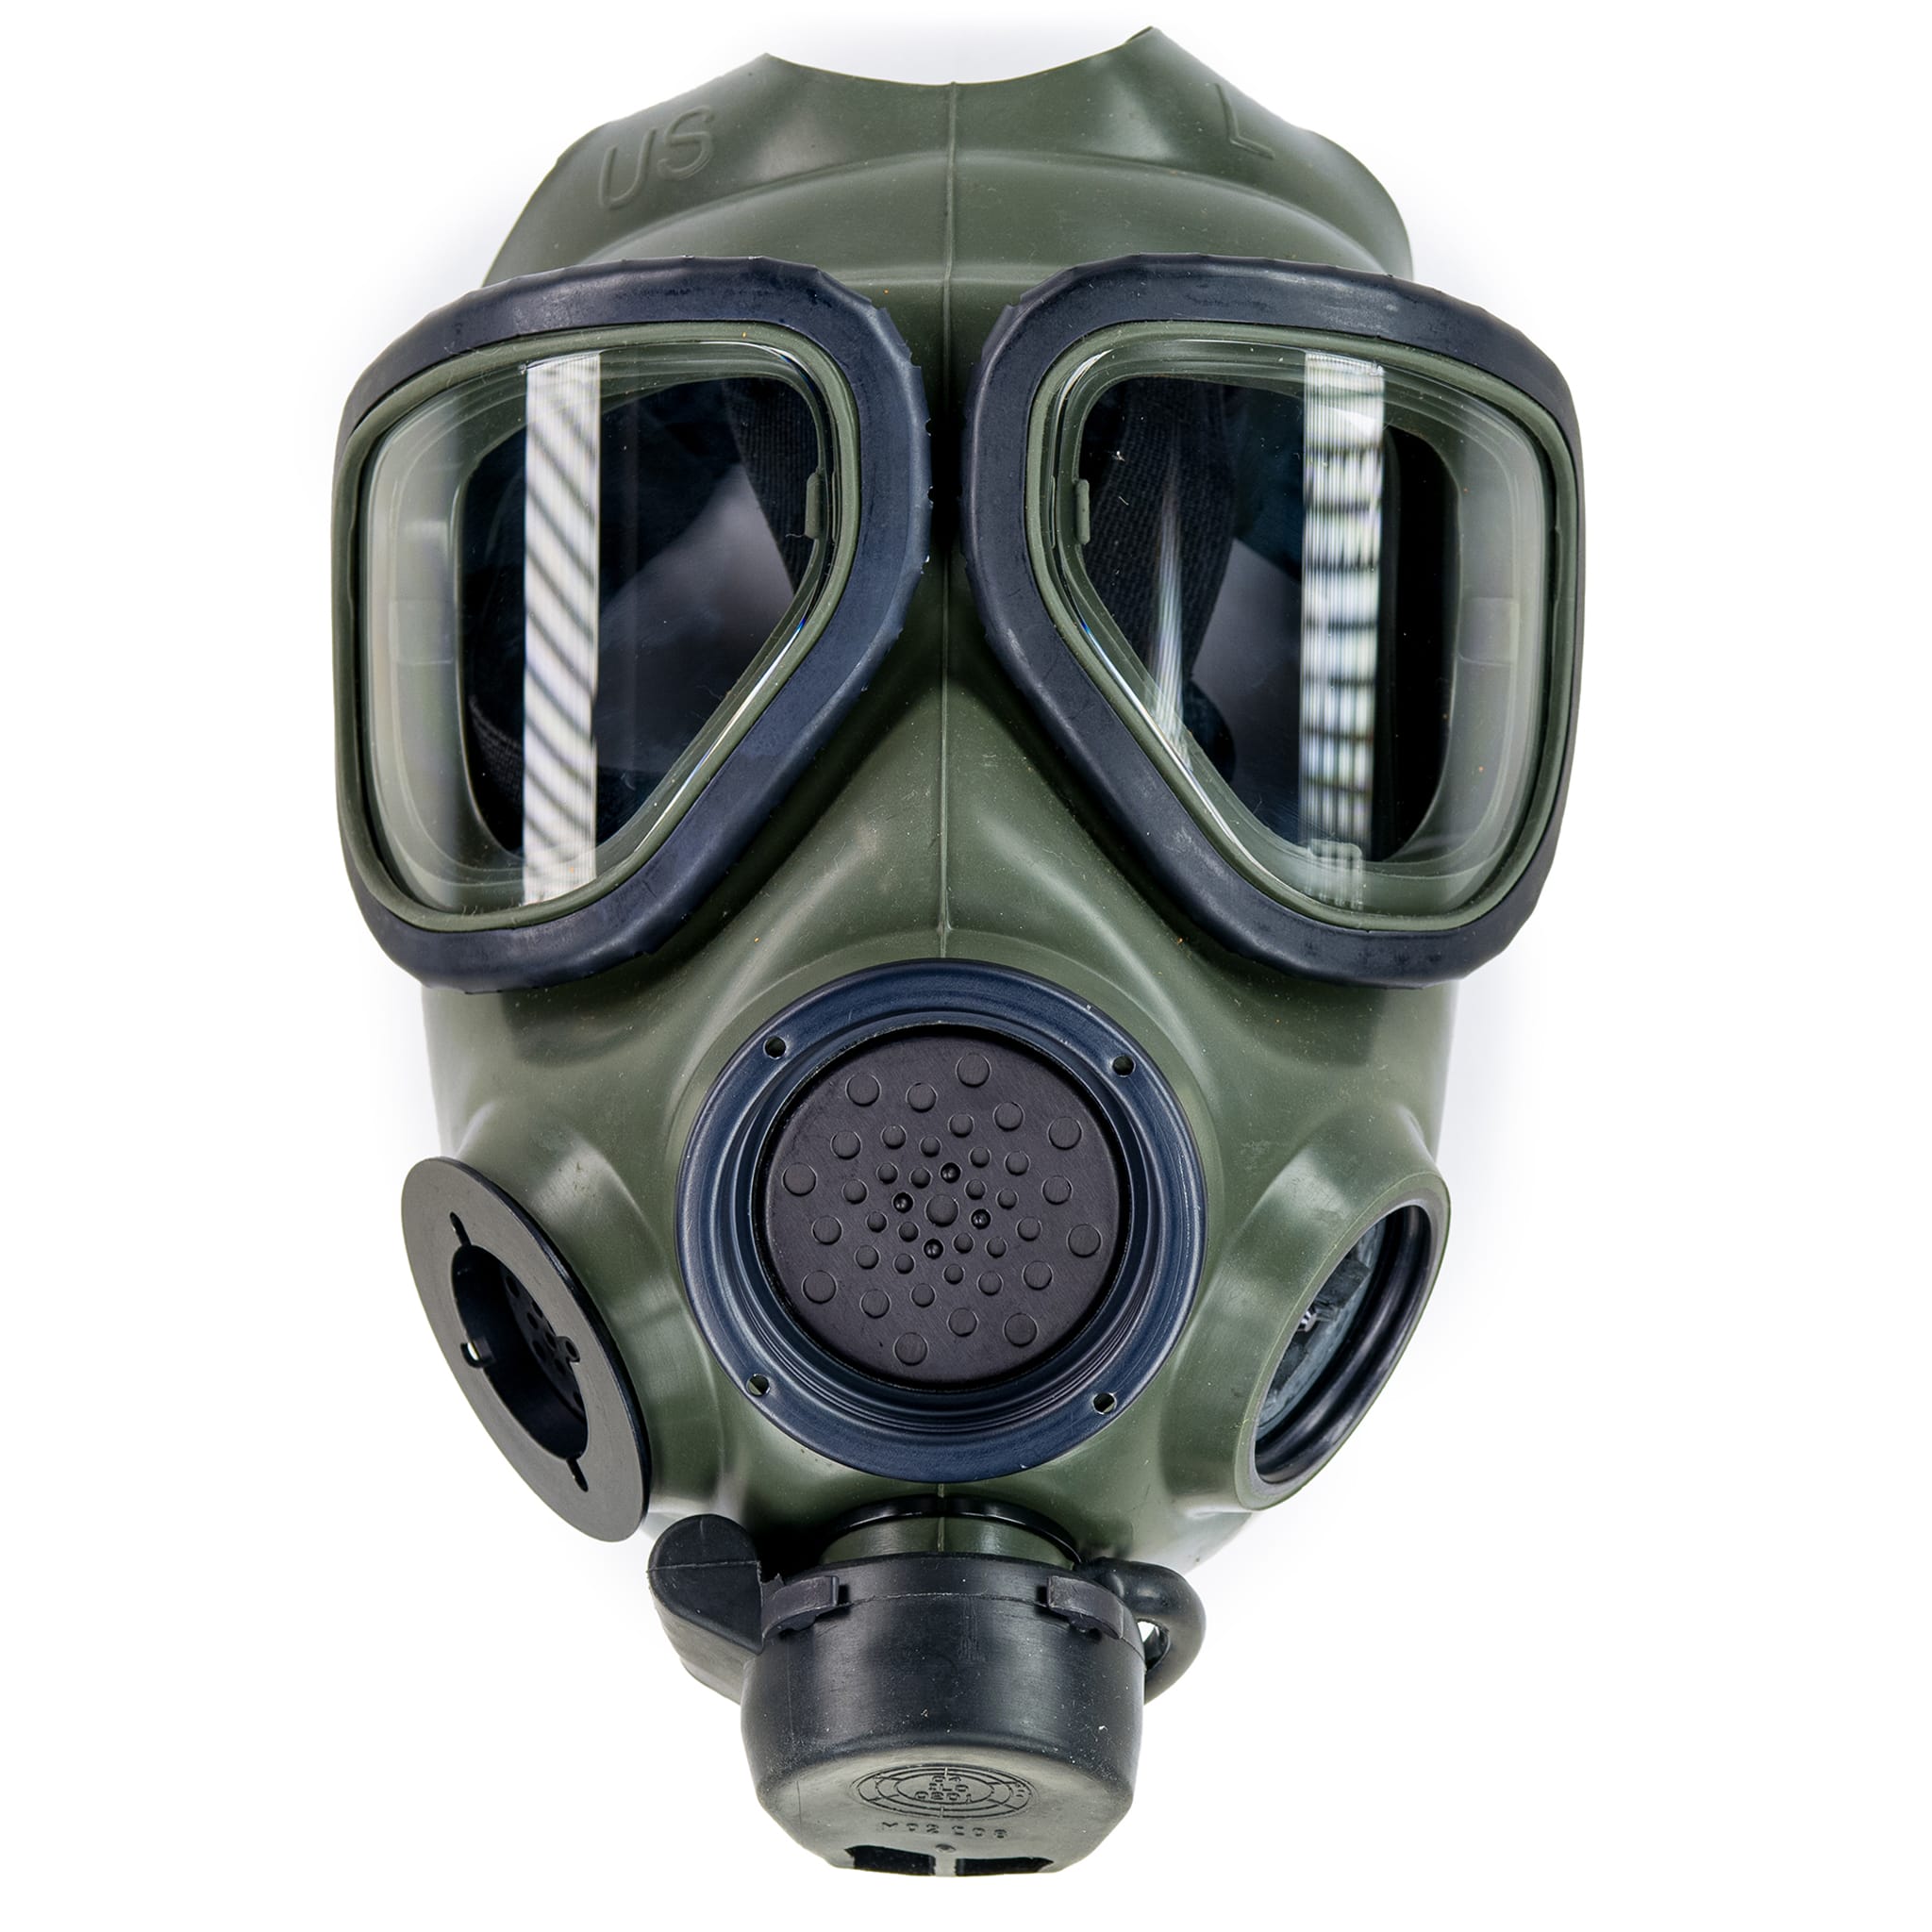 3m gas mask 7890